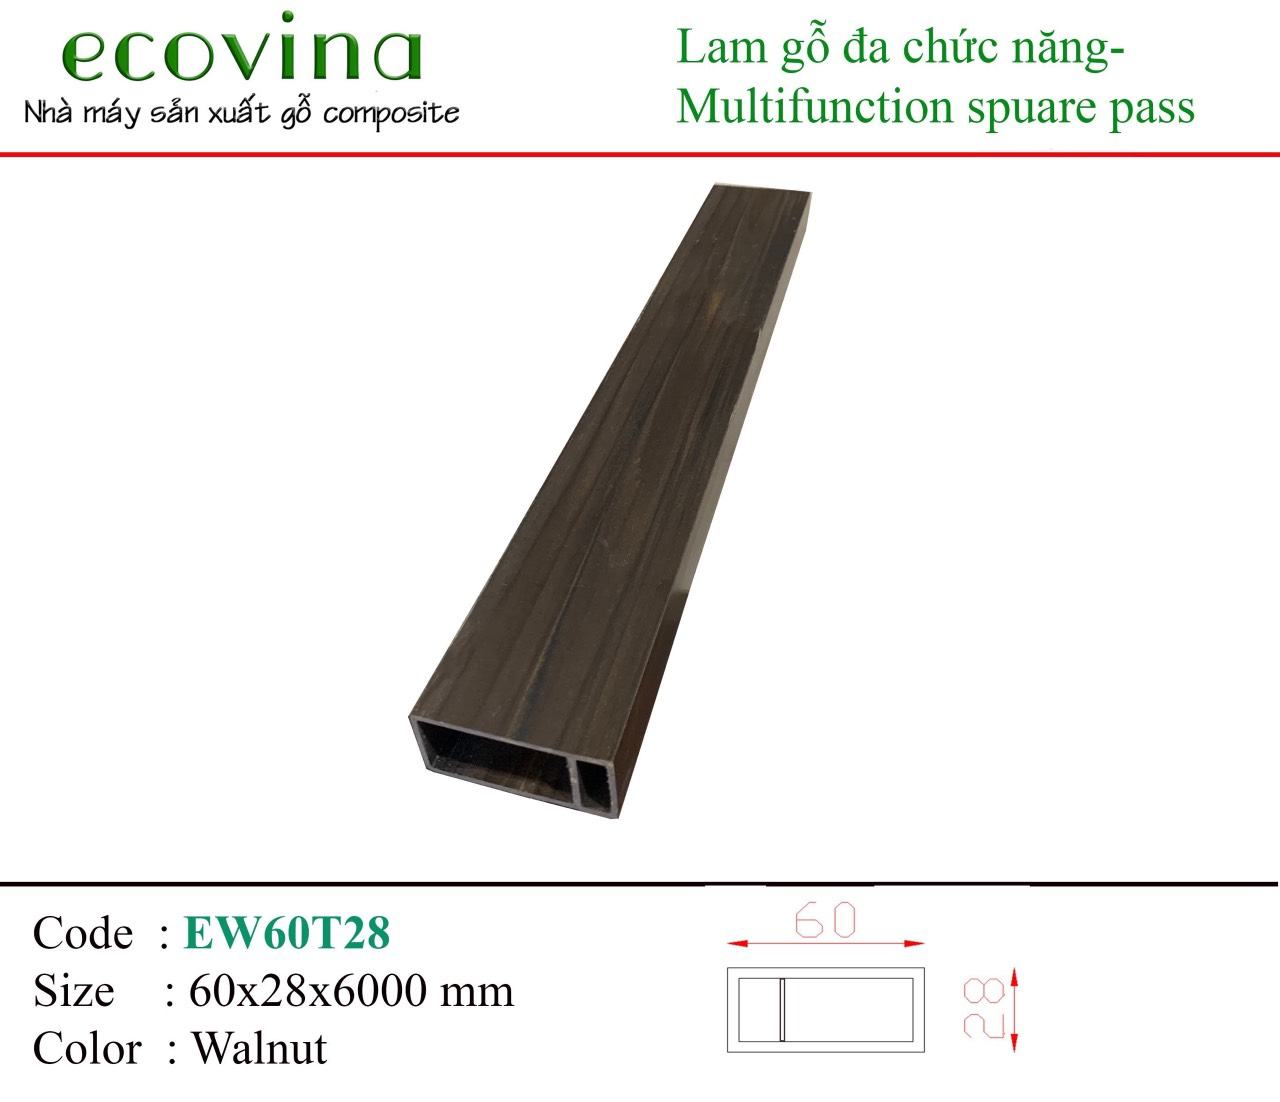  Lam gỗ trang trí ecovina mã EW60T28